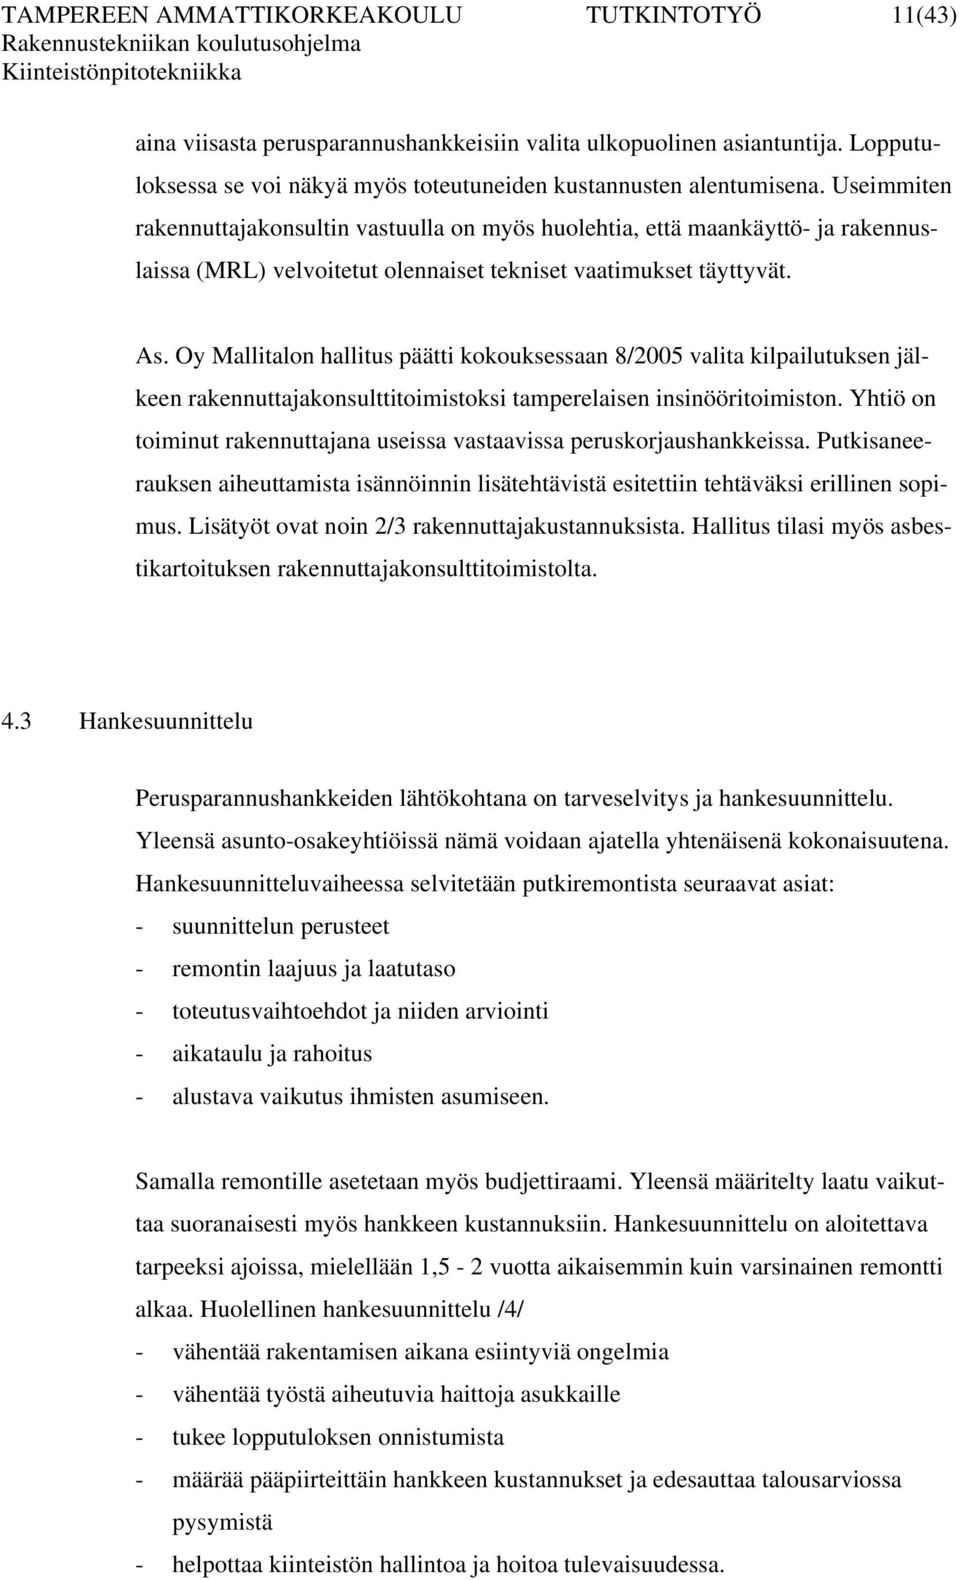 Oy Mallitalon hallitus päätti kokouksessaan 8/2005 valita kilpailutuksen jälkeen rakennuttajakonsulttitoimistoksi tamperelaisen insinööritoimiston.